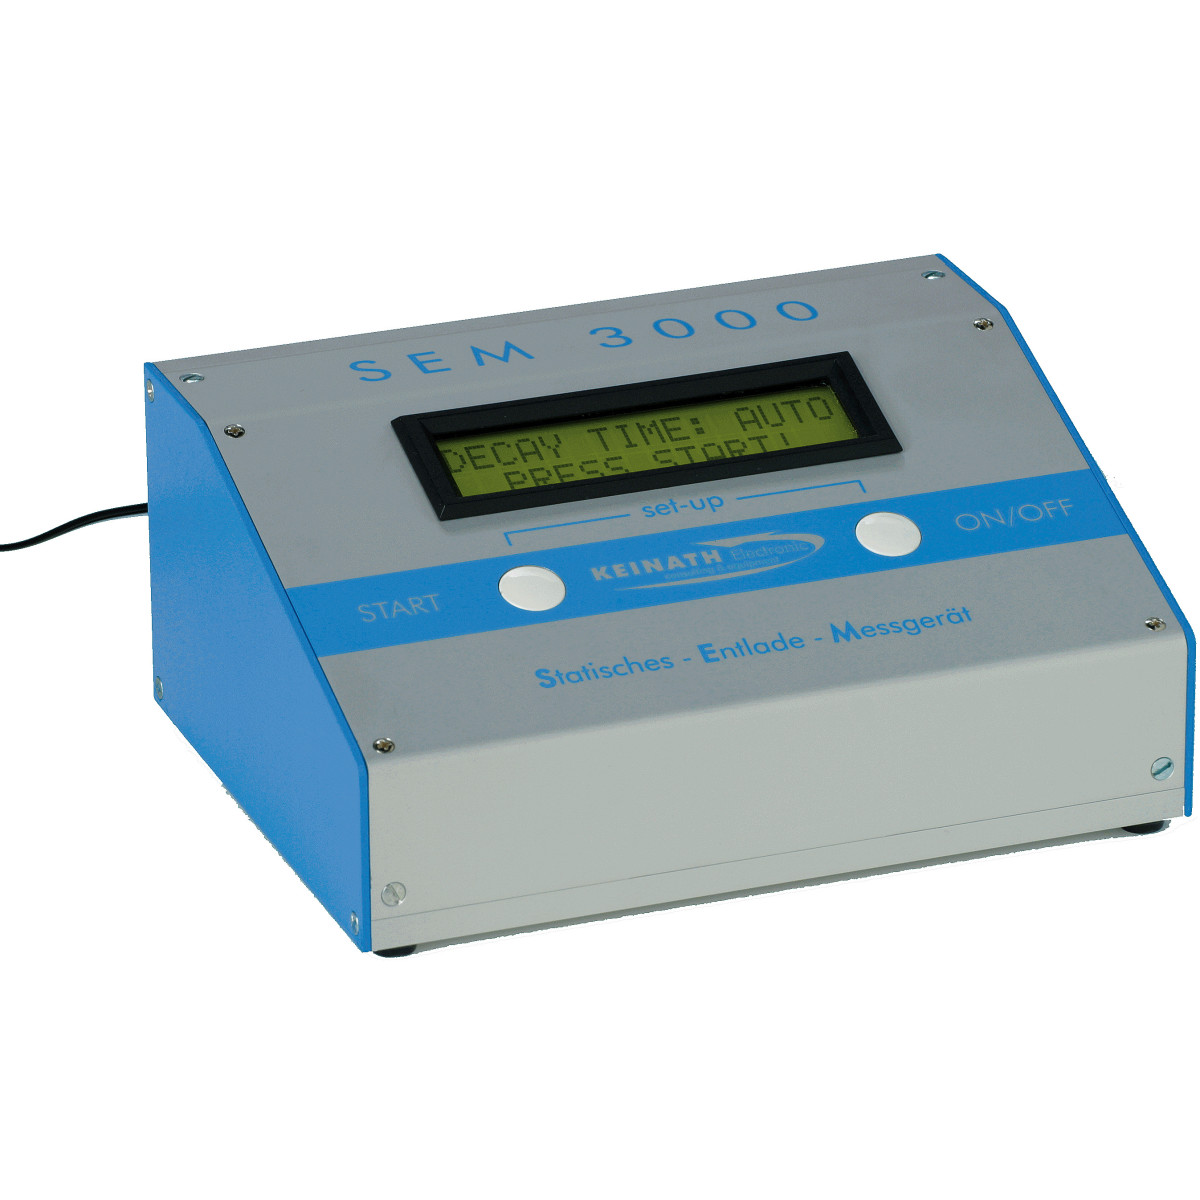 SEM 3000® - Electrostatic Discharge Meter